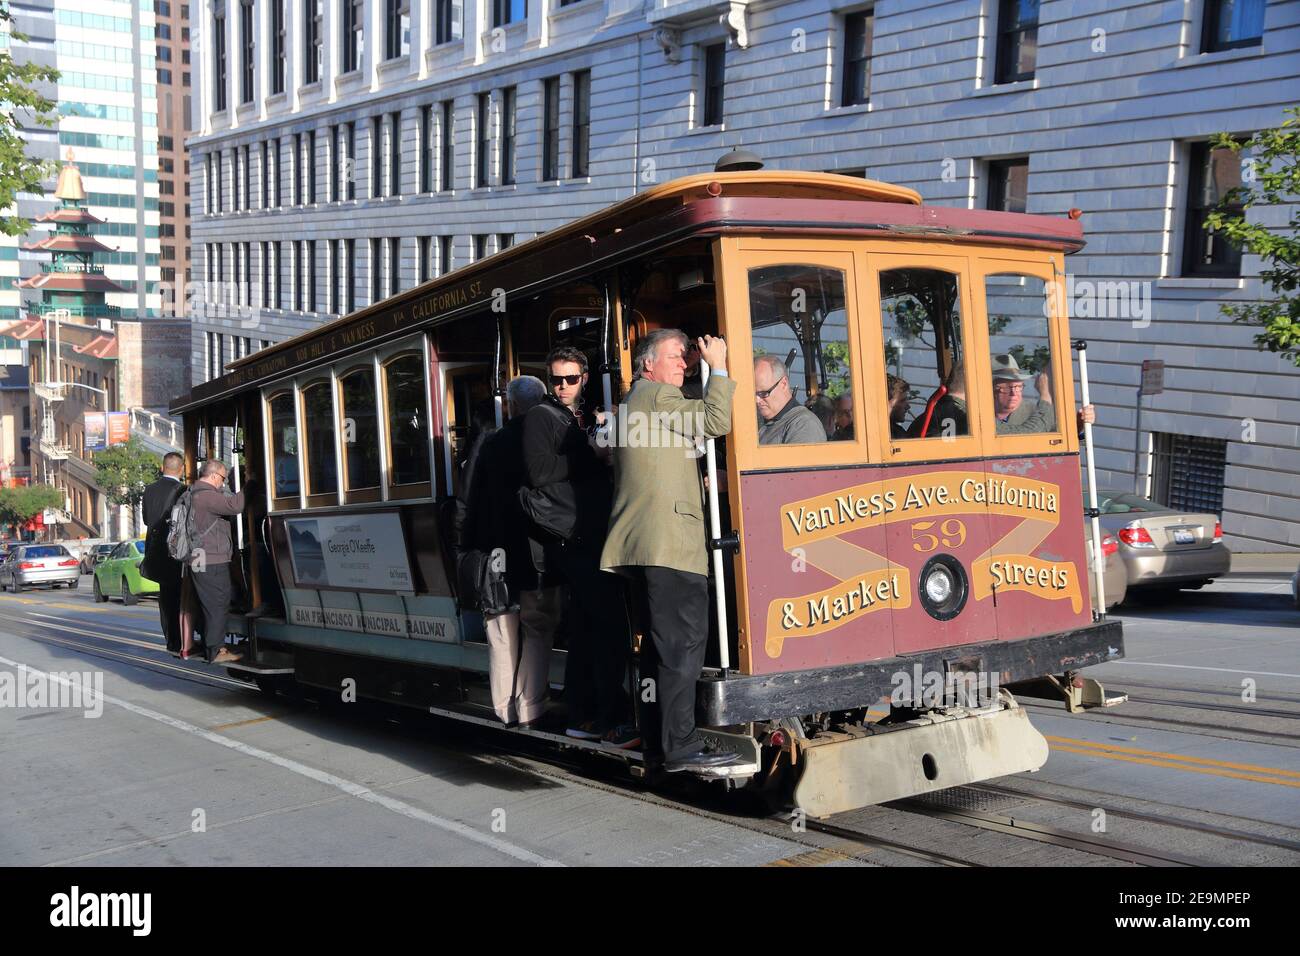 SAN FRANCISCO, USA - 9. APRIL 2014: Menschen fahren historische Seilbahn in San Francisco, USA. Berühmte SF Straßenbahnen in Betrieb genommen im Jahr 1878. Alcatraz kann b Stockfoto